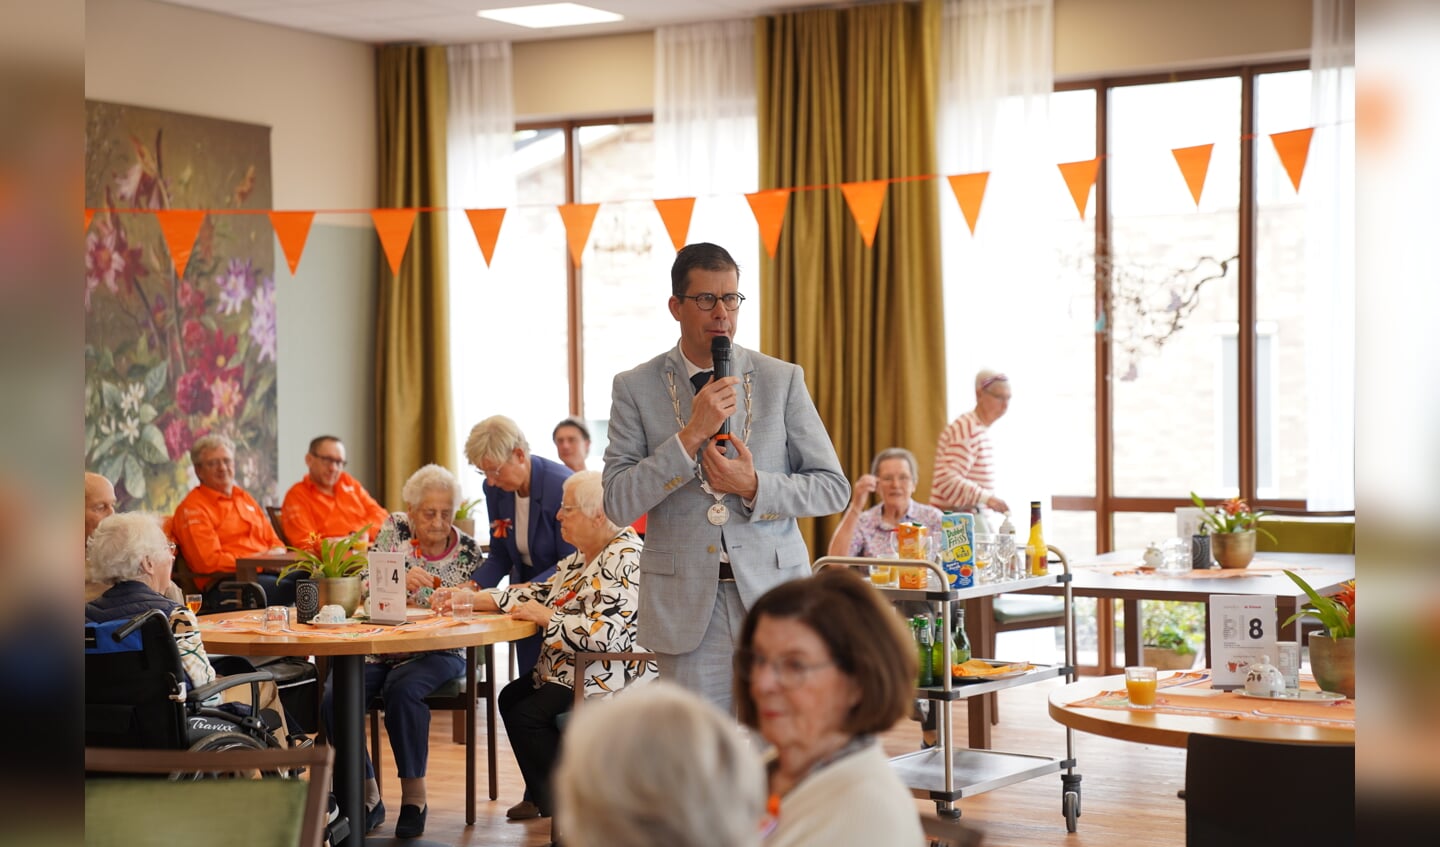 Een speciaal woordje van burgemeester Joost van Oostrum maakte het tot een bijzondere ochtend voor iedereen. Foto: Wilma Arink.